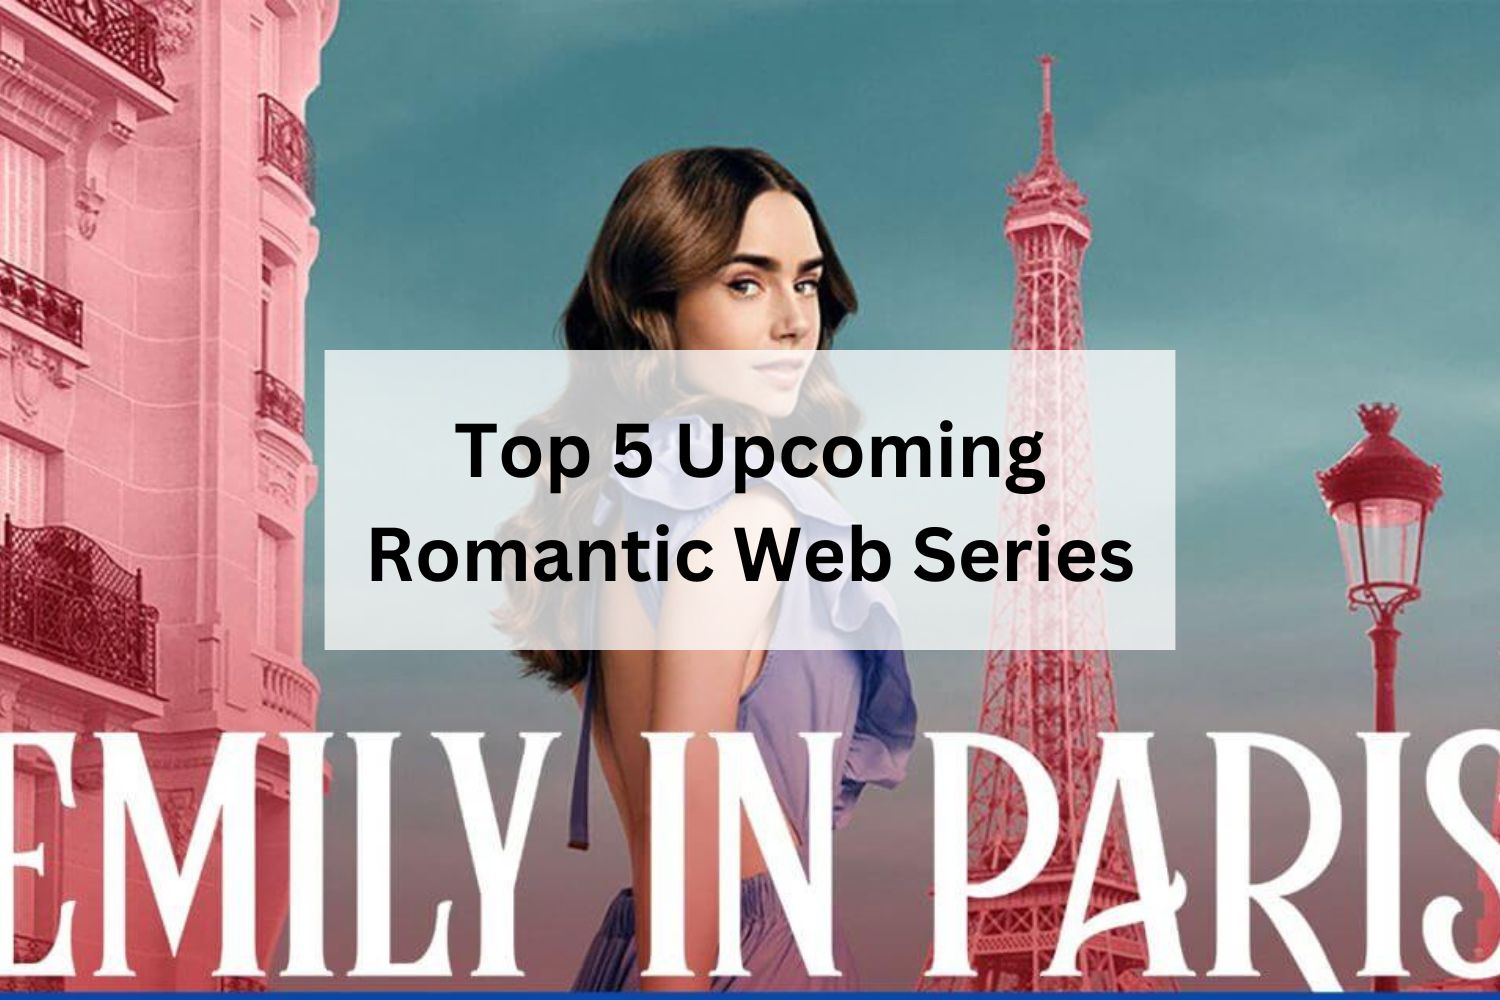 Top 5 Upcoming Romantic Web Series